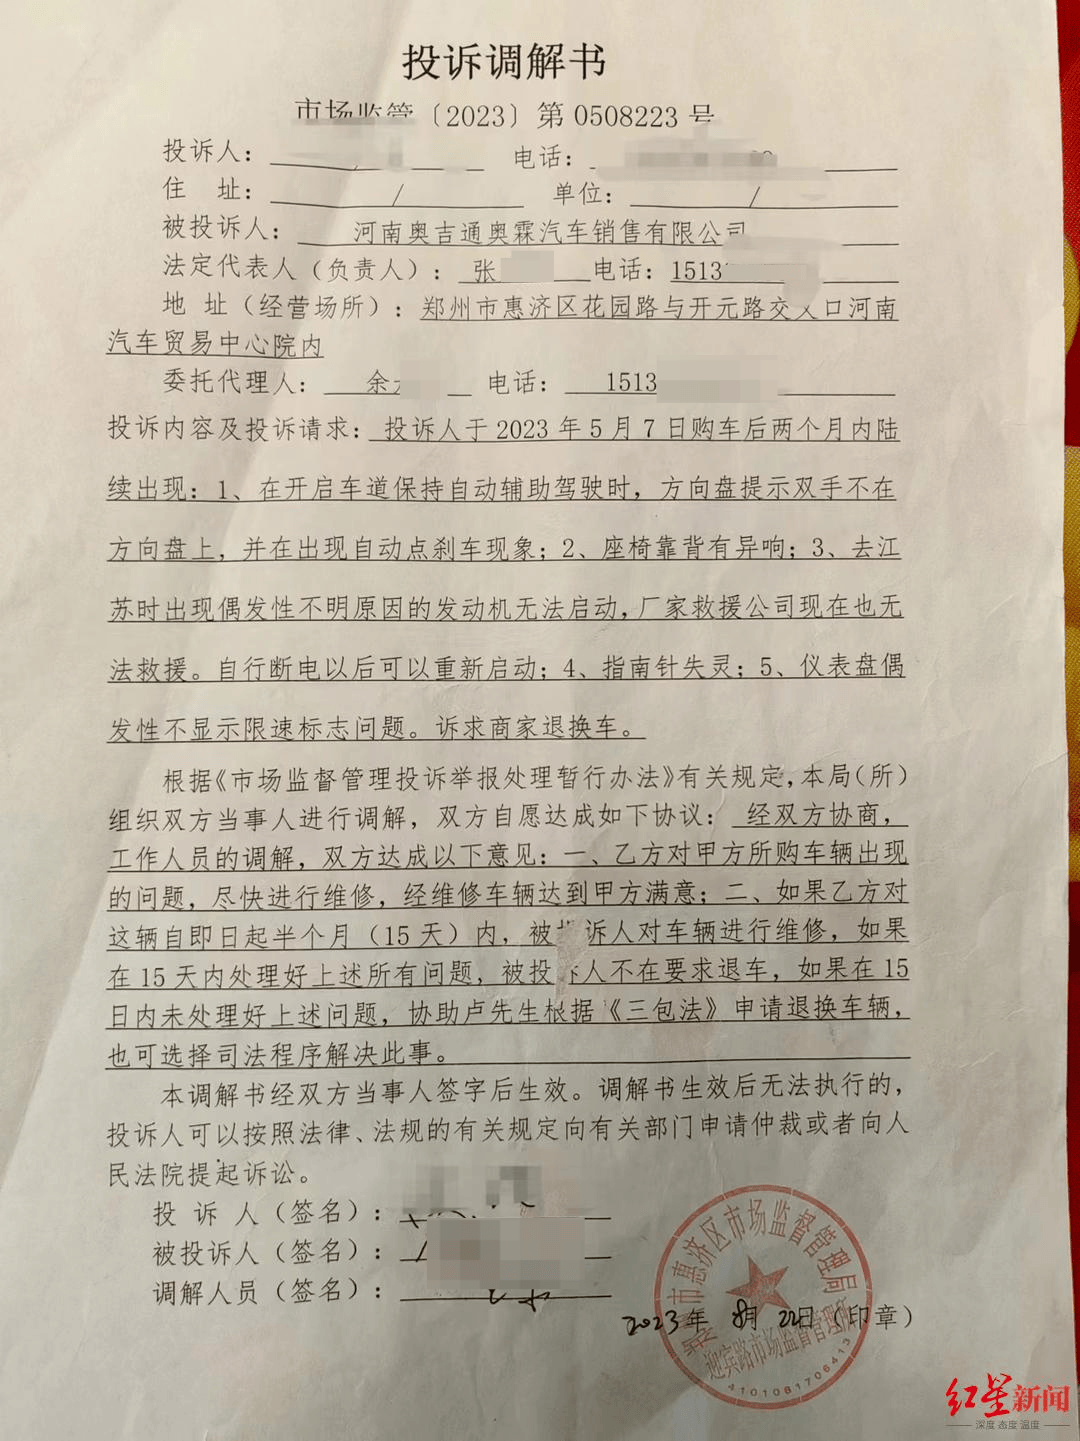 郑州男子购百万豪车后起诉4S店要求“退一赔三”，4S店反告其损害名誉权